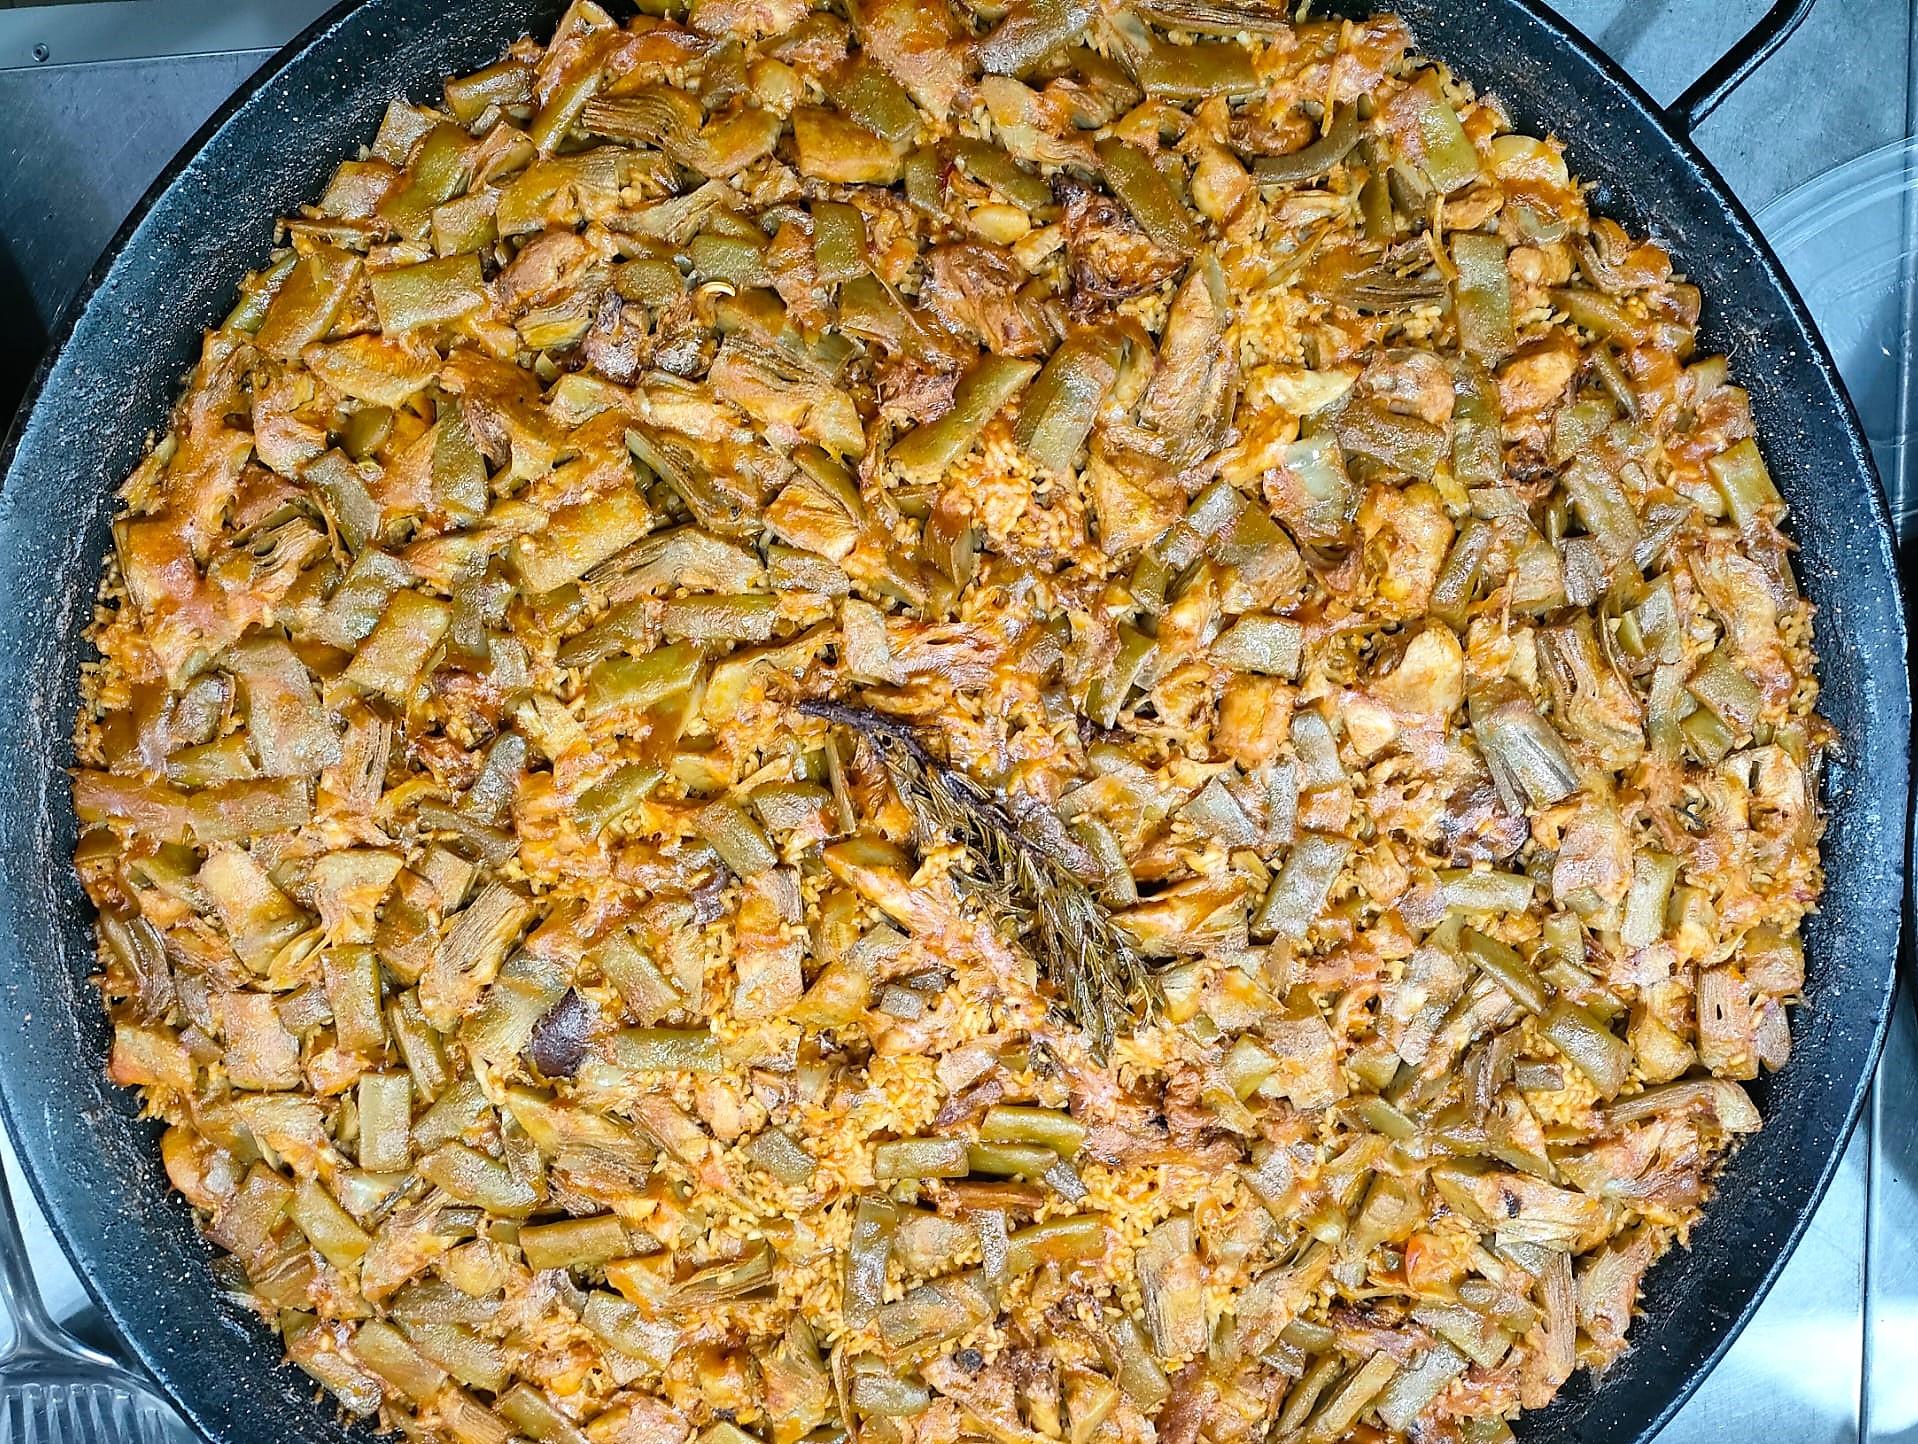 Paella valenciana